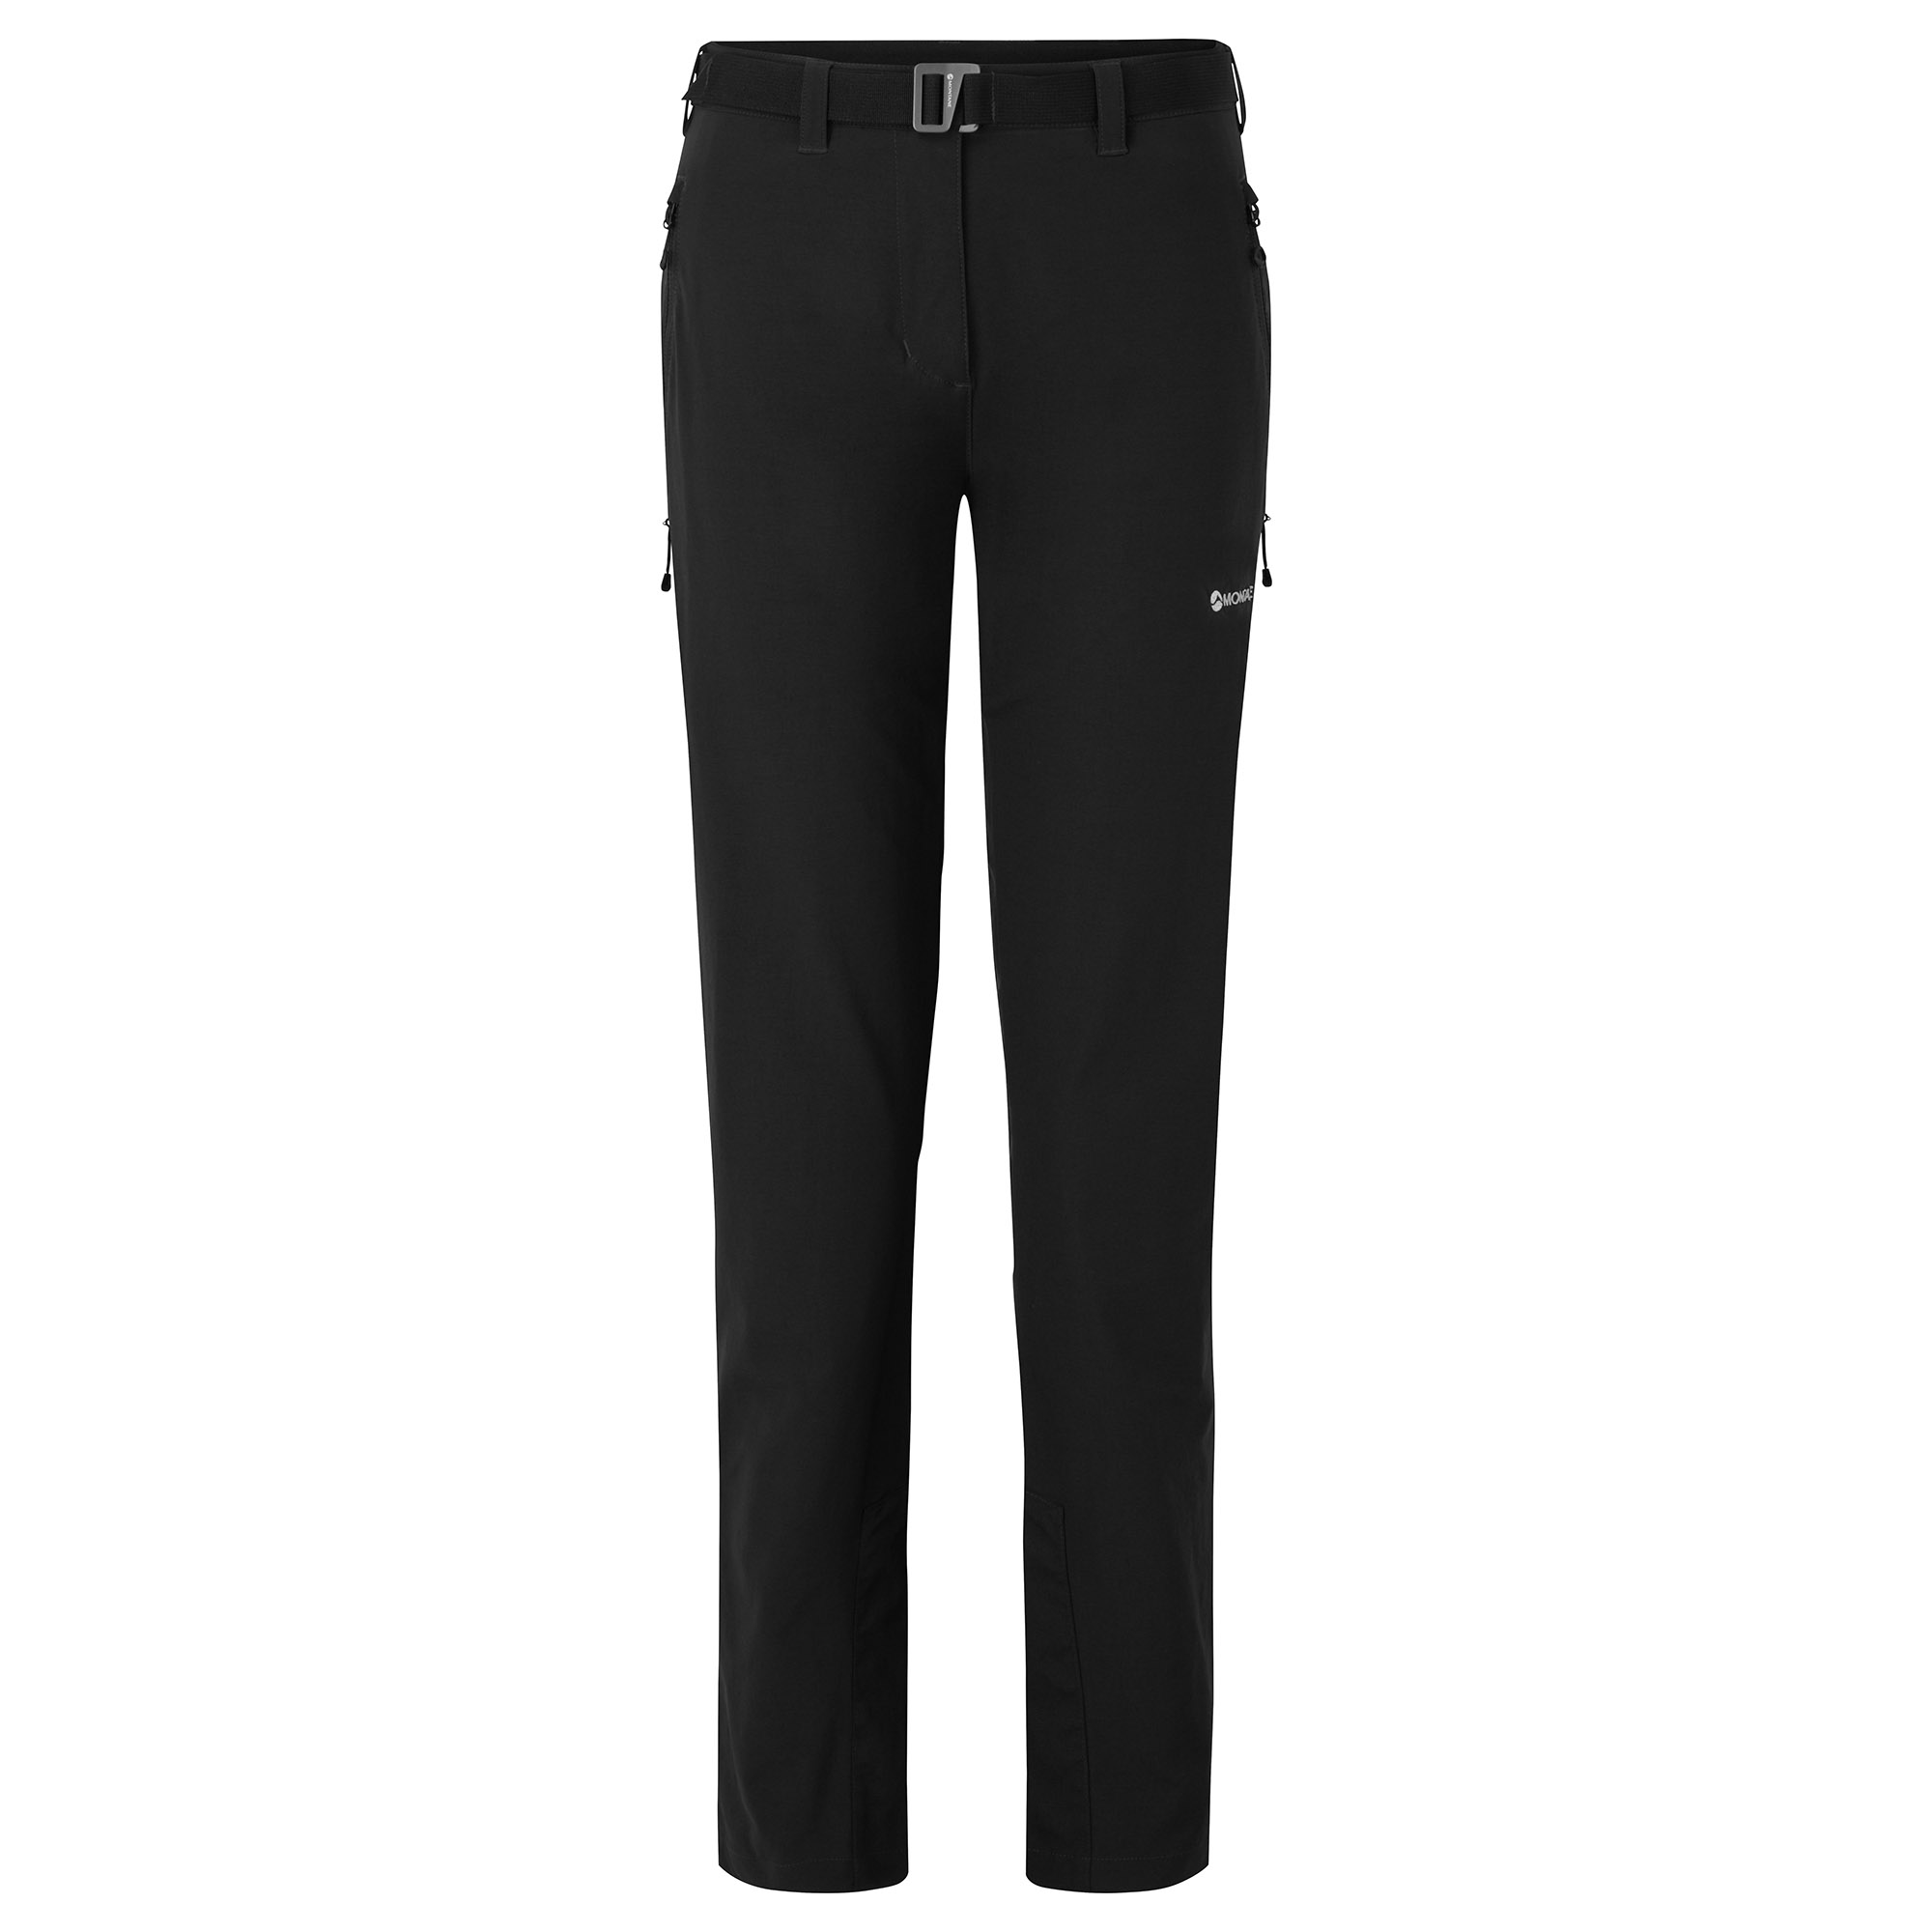 Montane dámské softshellové kalhoty Fem Terra Stretch Pants - Prodloužené Nohavice Barva: black, Velikost: UK12/US8/EUR40/M